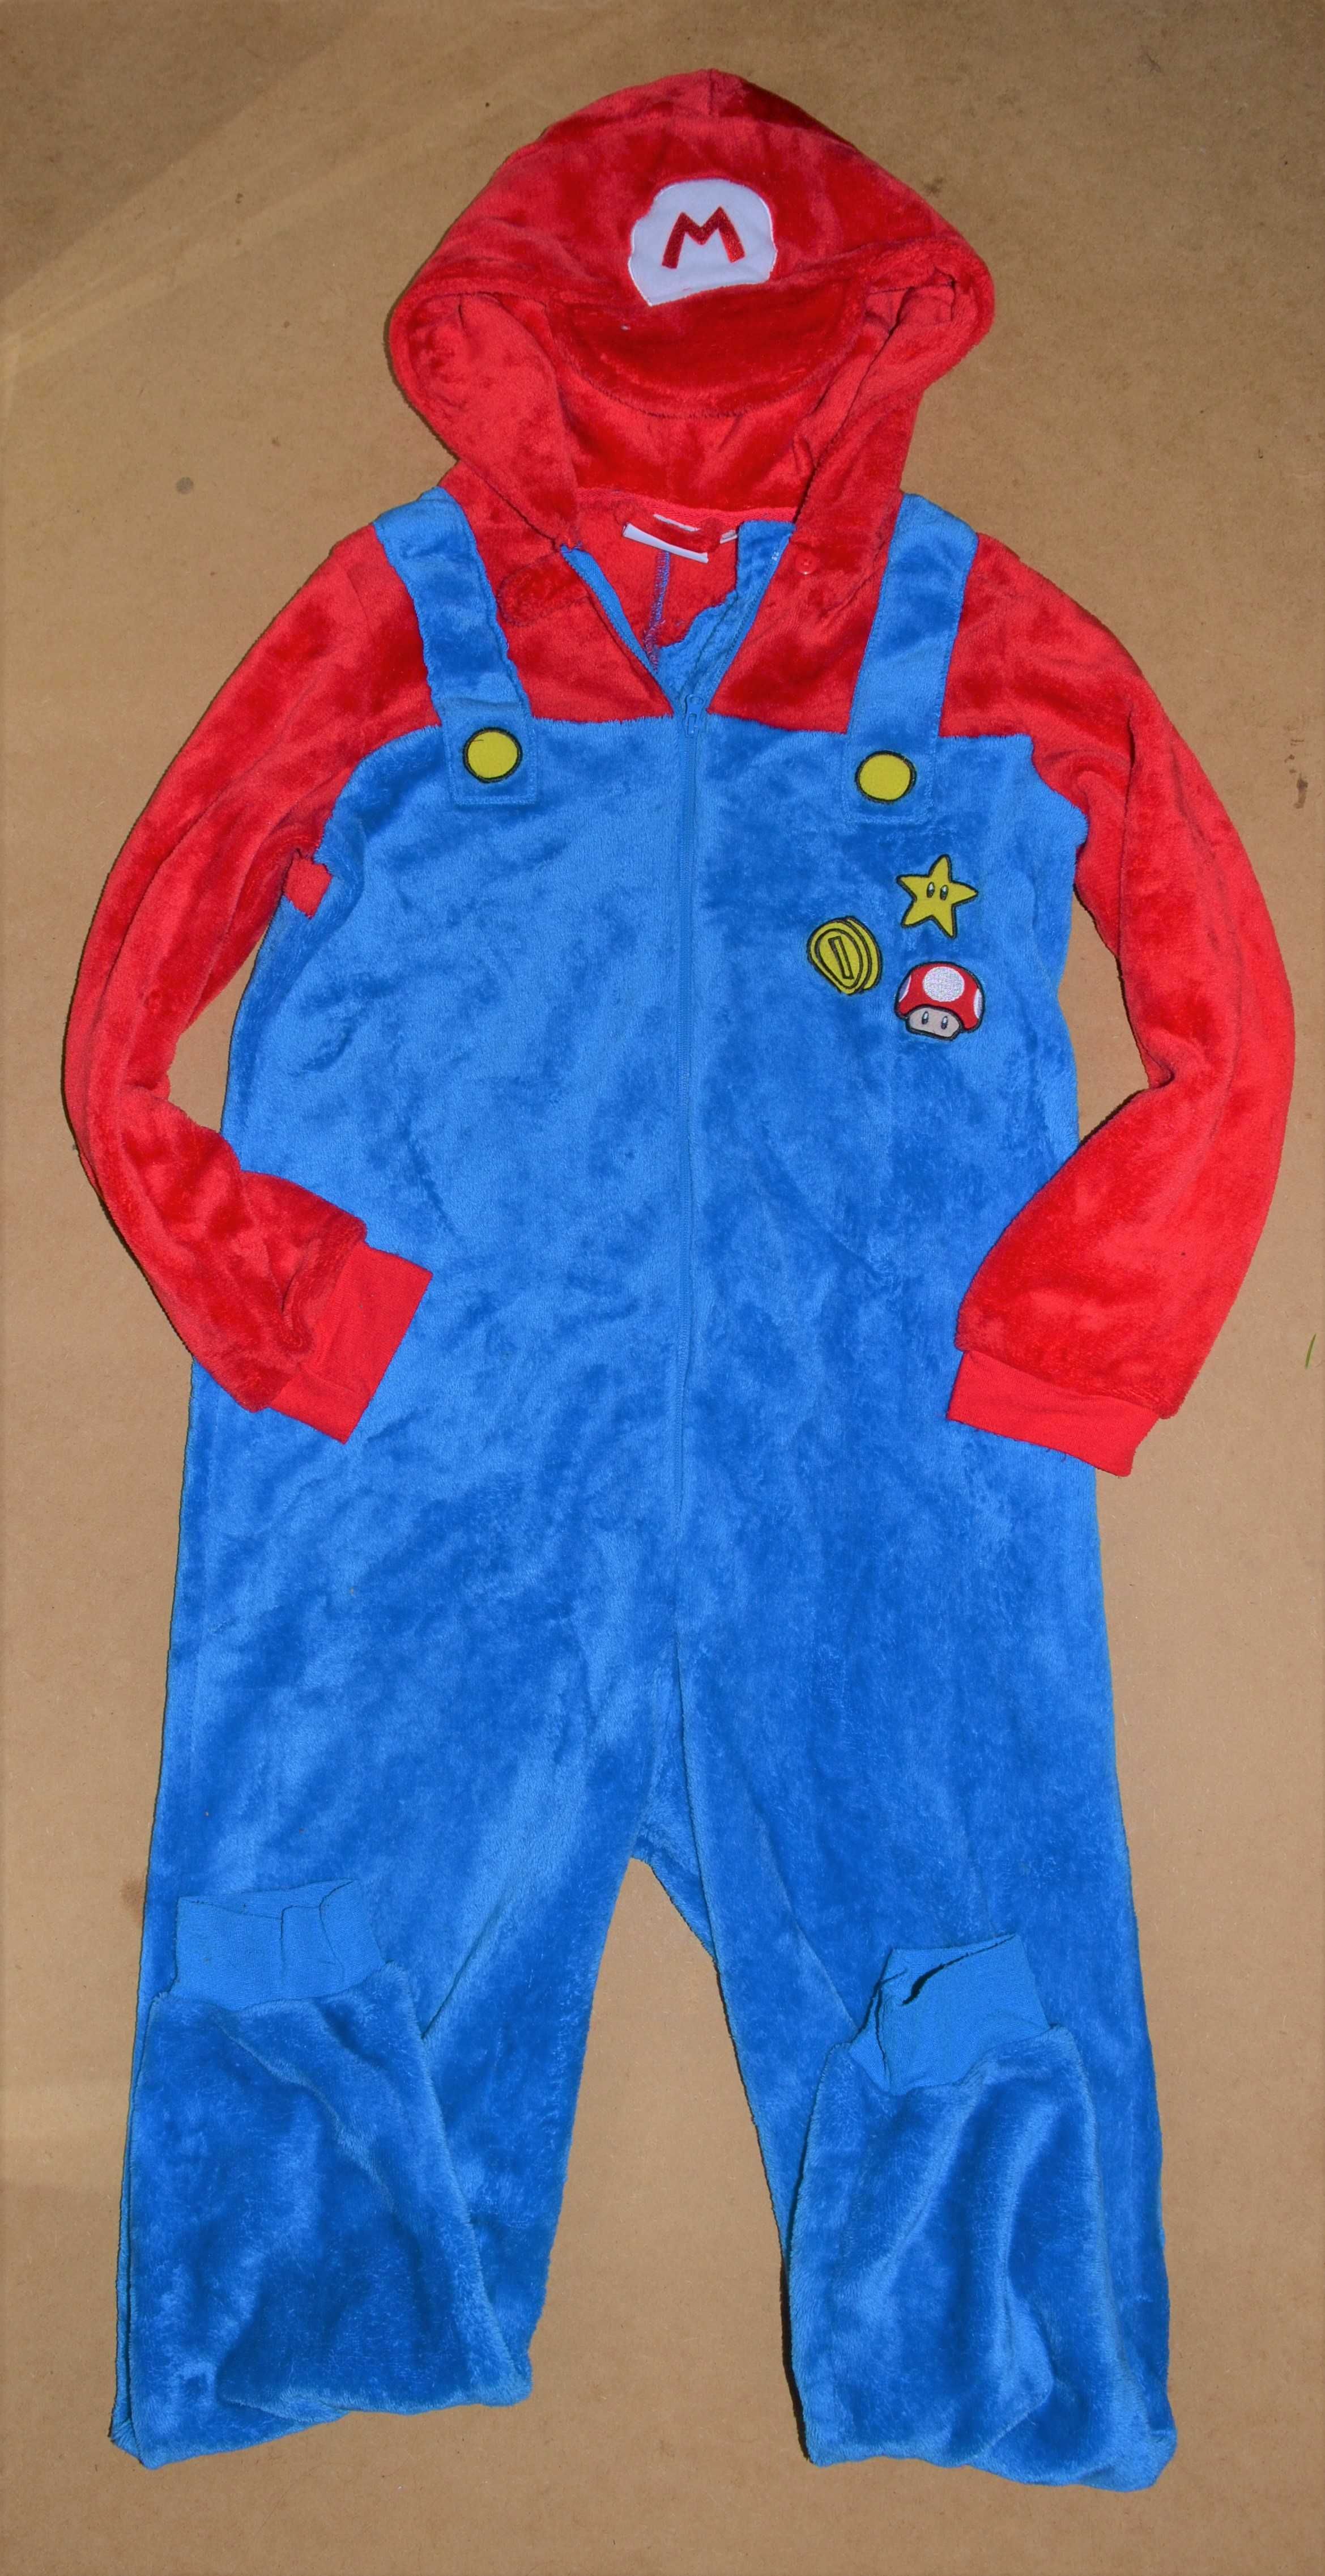 7^ Super Mario piżama strój przebranie 14/16 Lat_170cm